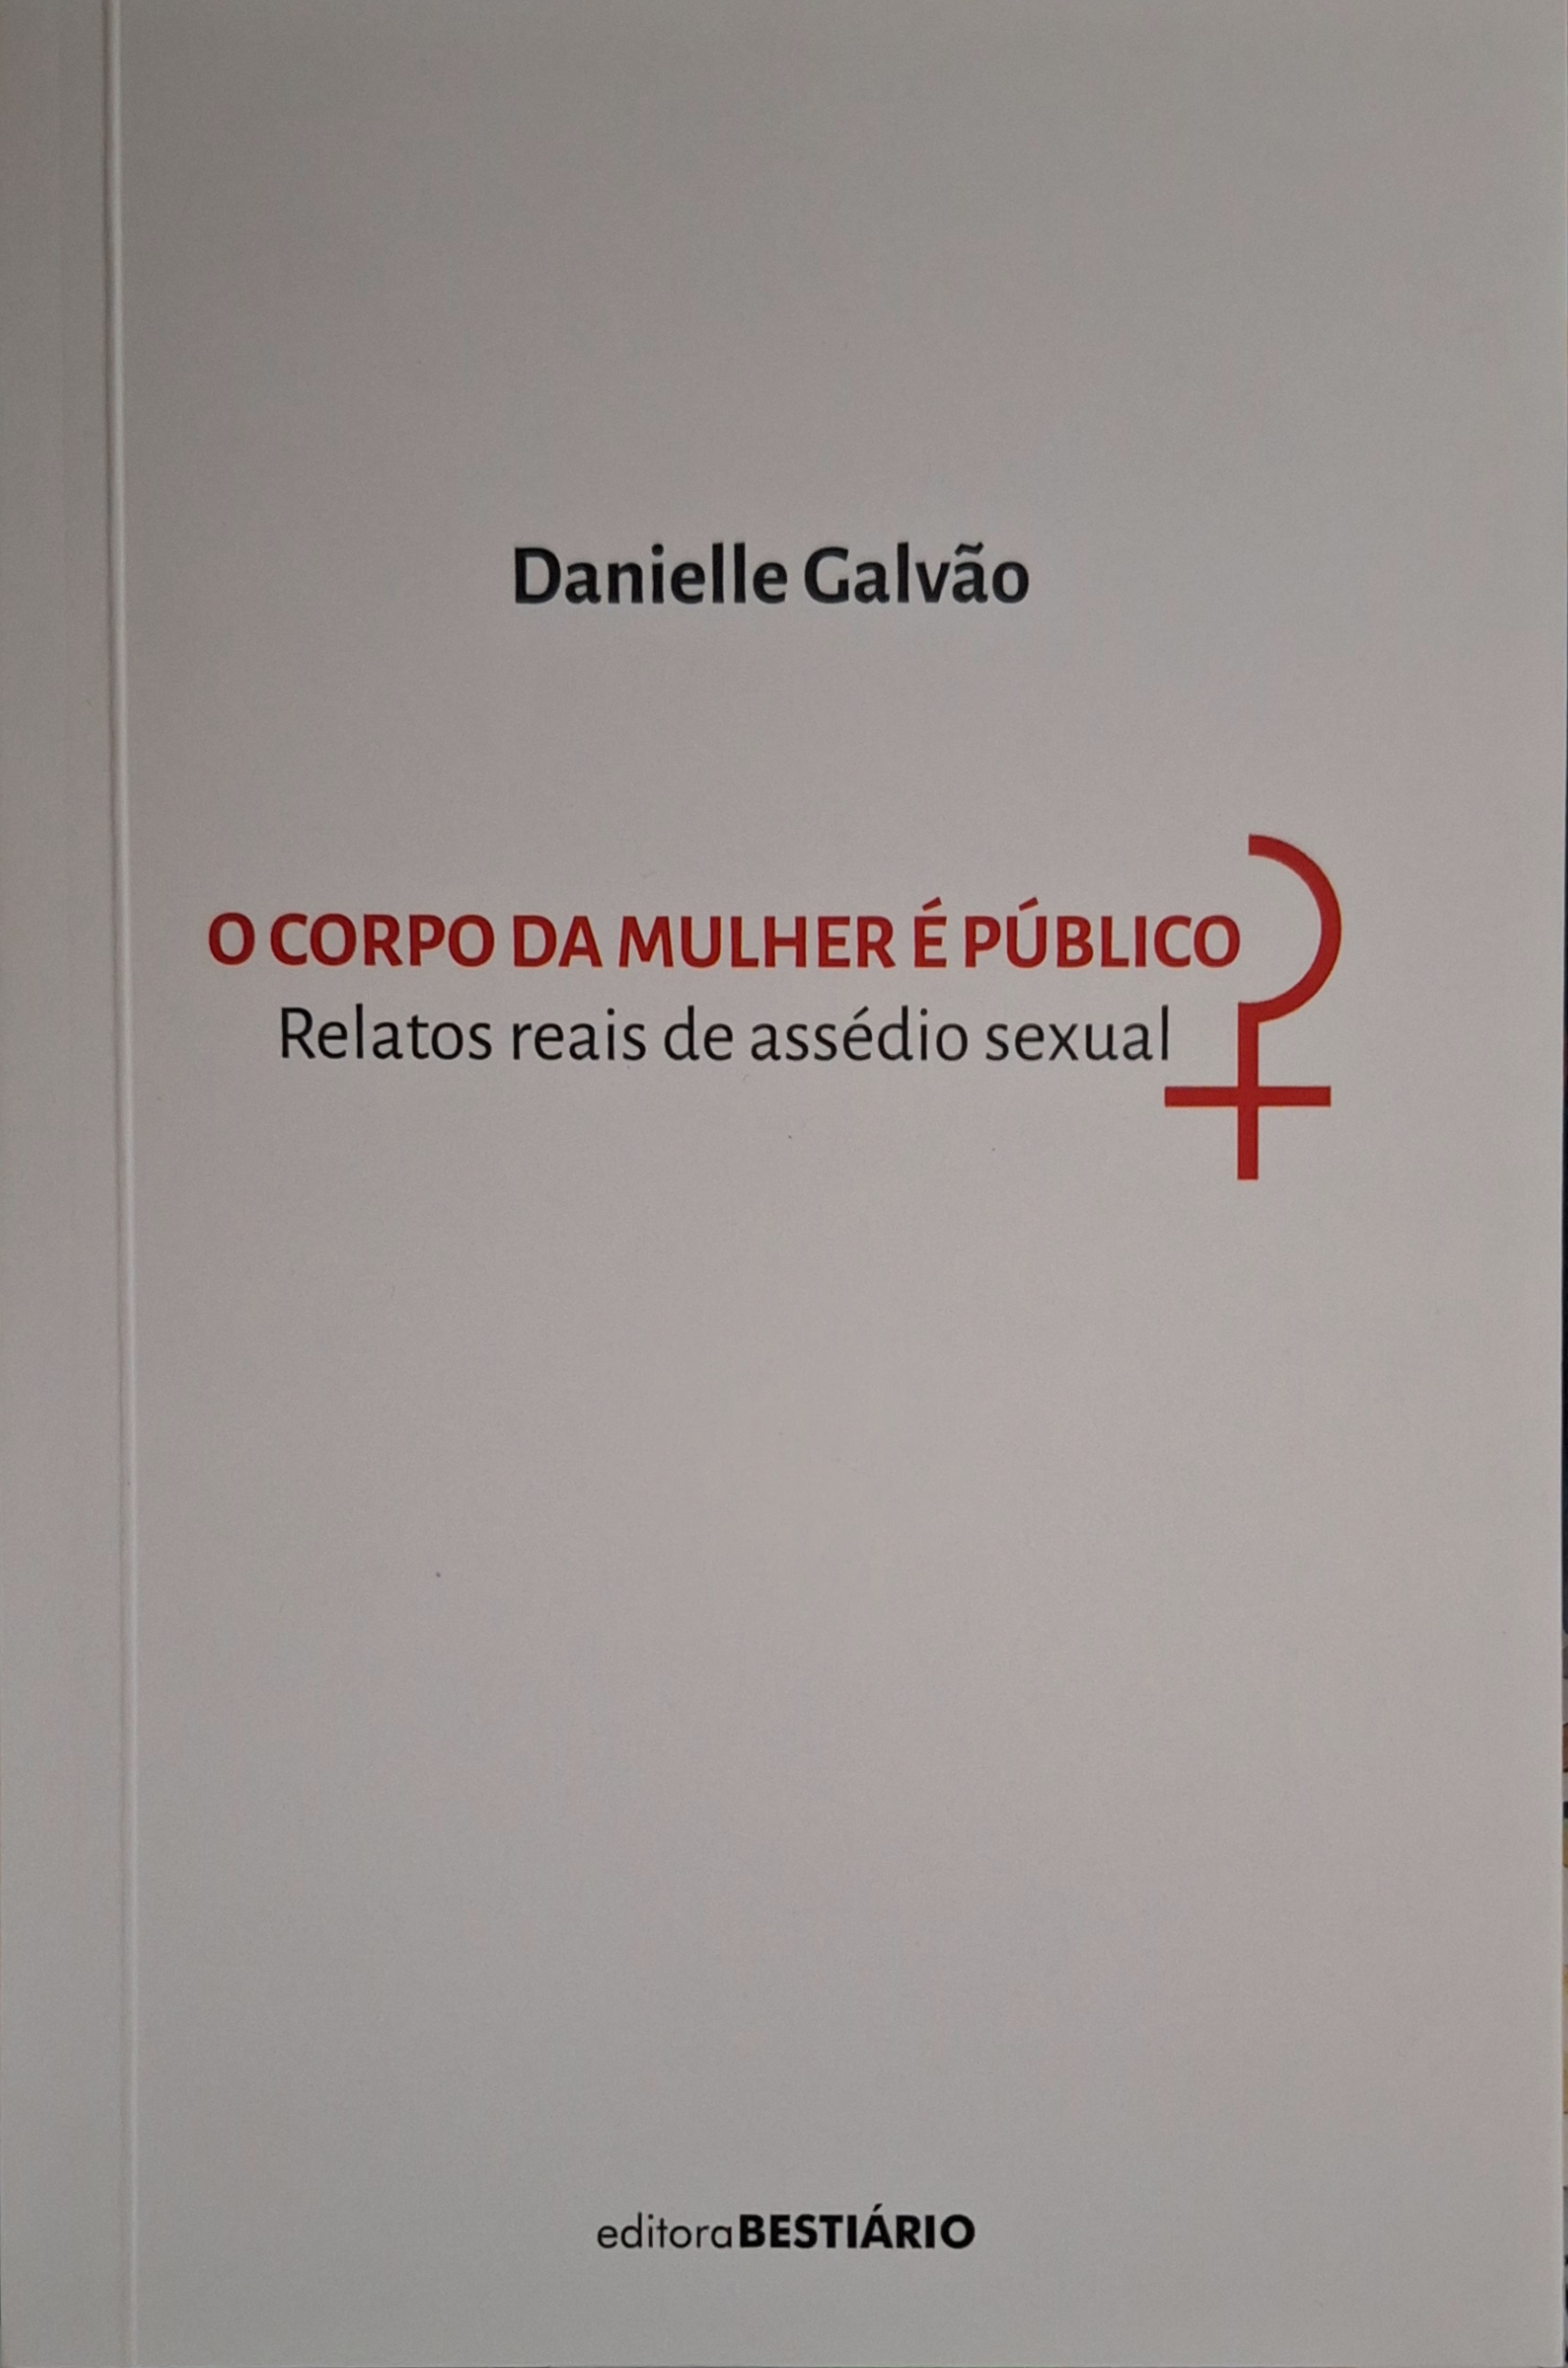 Capa do livro 'O corpo da mulher é público'